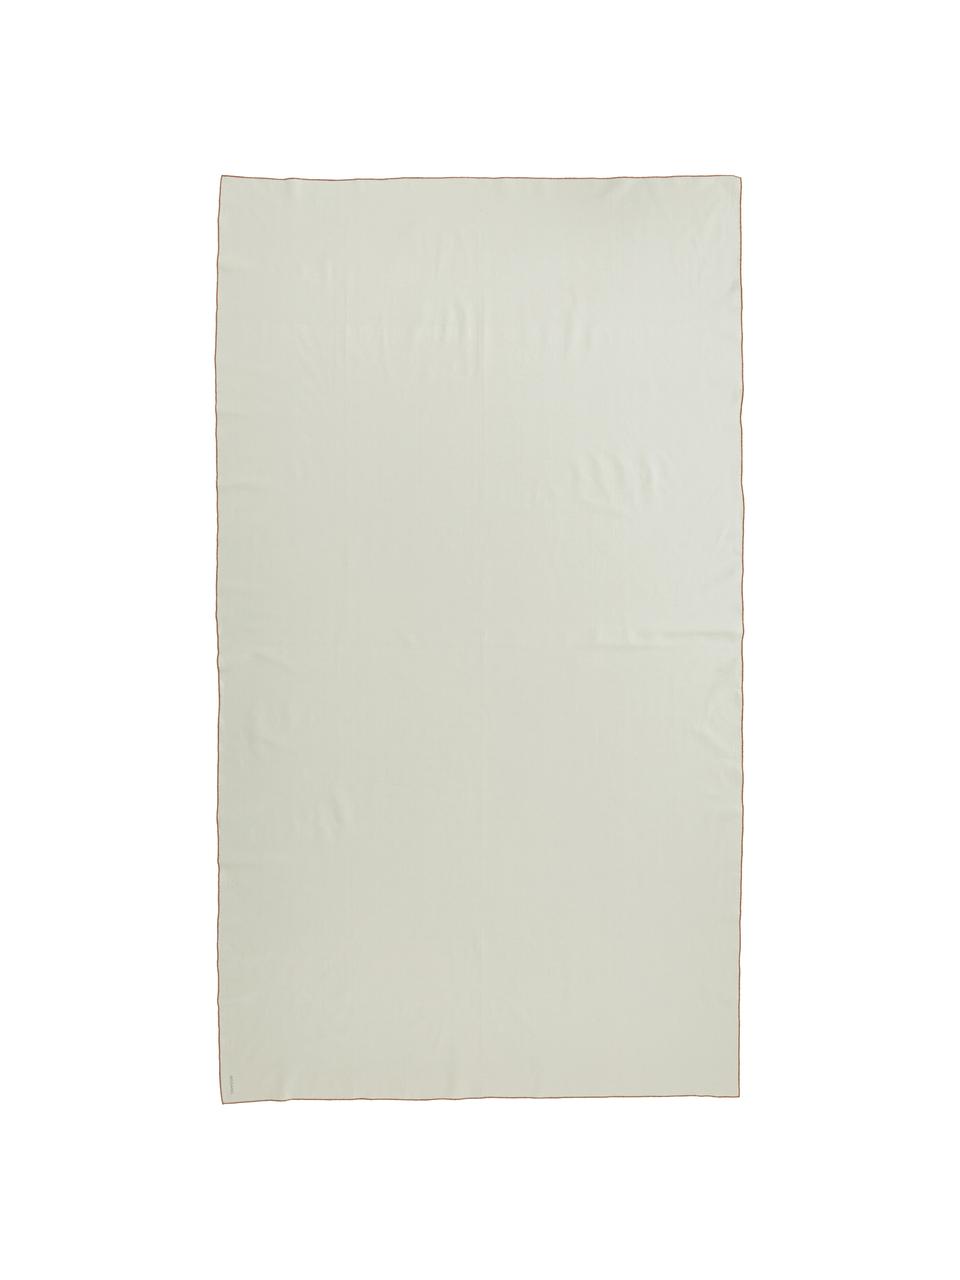 Tovaglia in cotone bianco crema Organic, 100% cotone, Bianco crema, rosso, Per 6-10 persone (Larg. 140 x Lung. 250 cm)